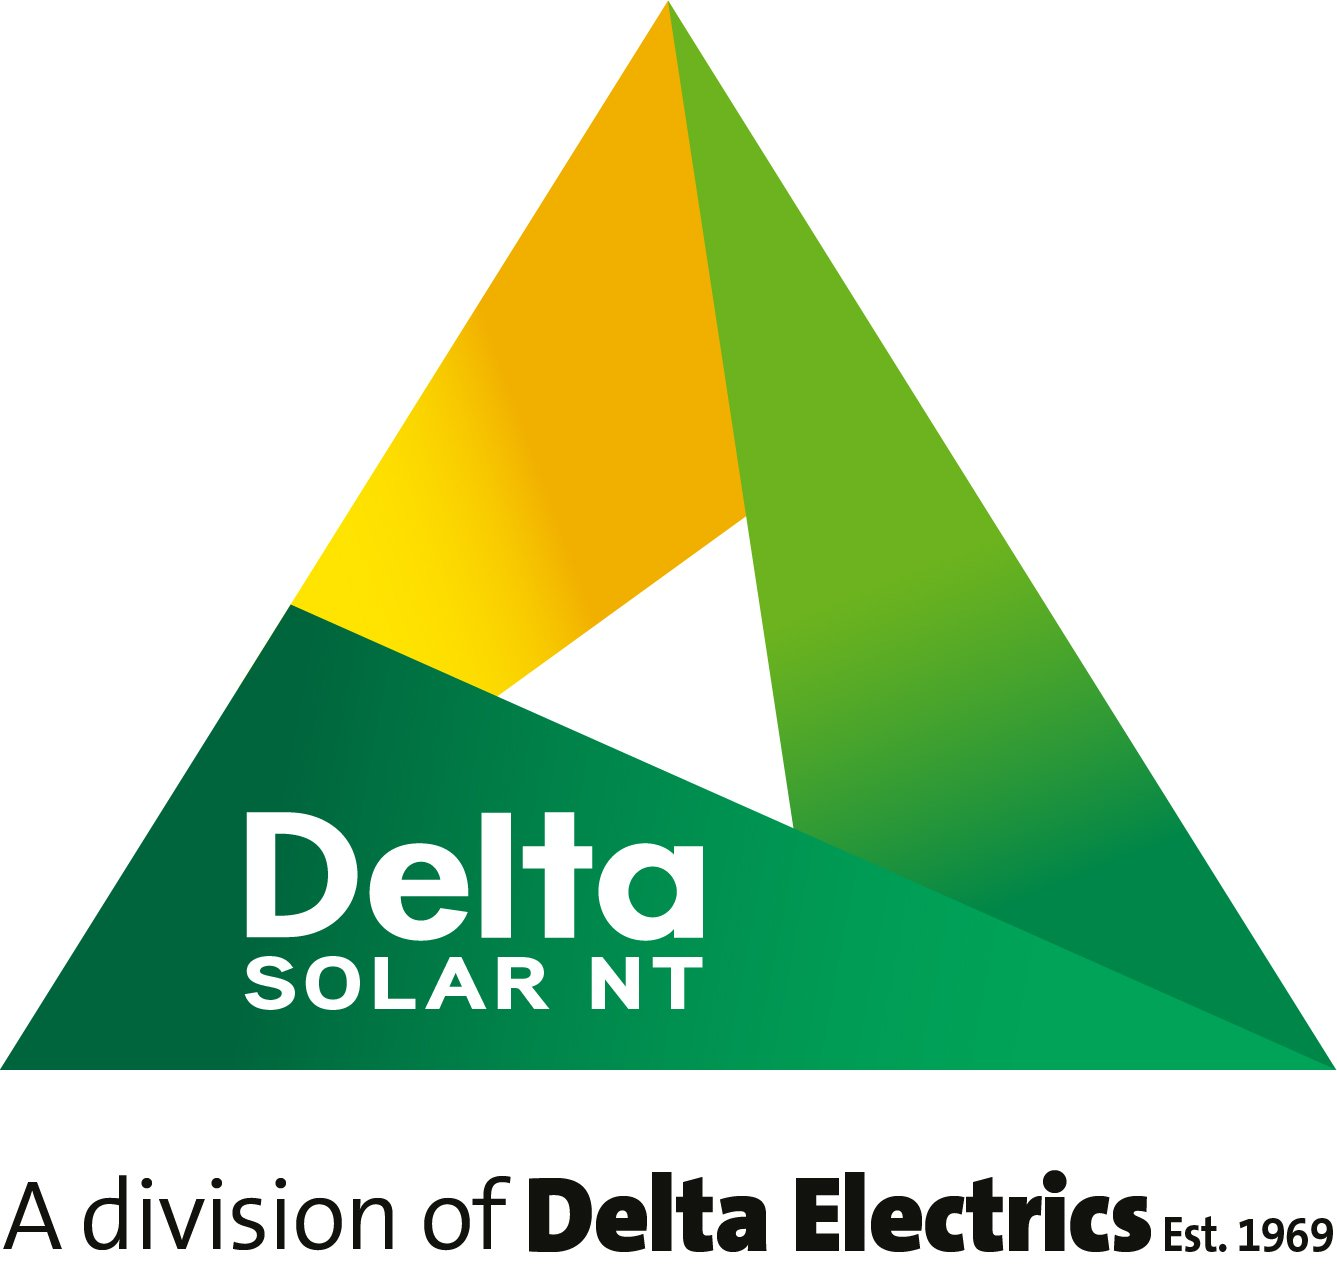 delta solar nt is a division of delta electrics